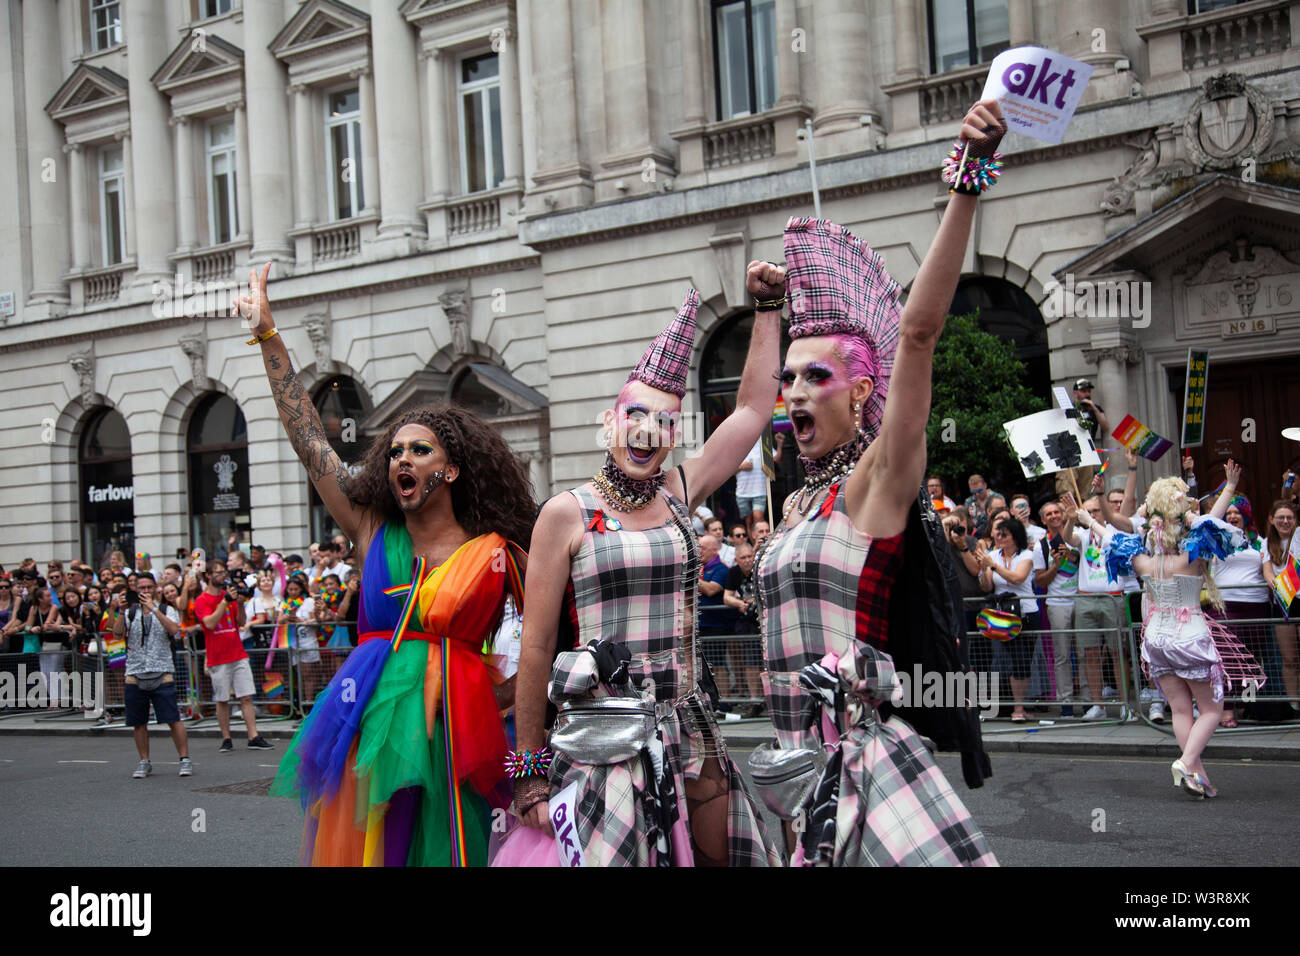 Londres, UK - 6 juillet 2019 : femme transgenre posent à la gay pride annuelle de mars dans le centre de Londres Banque D'Images